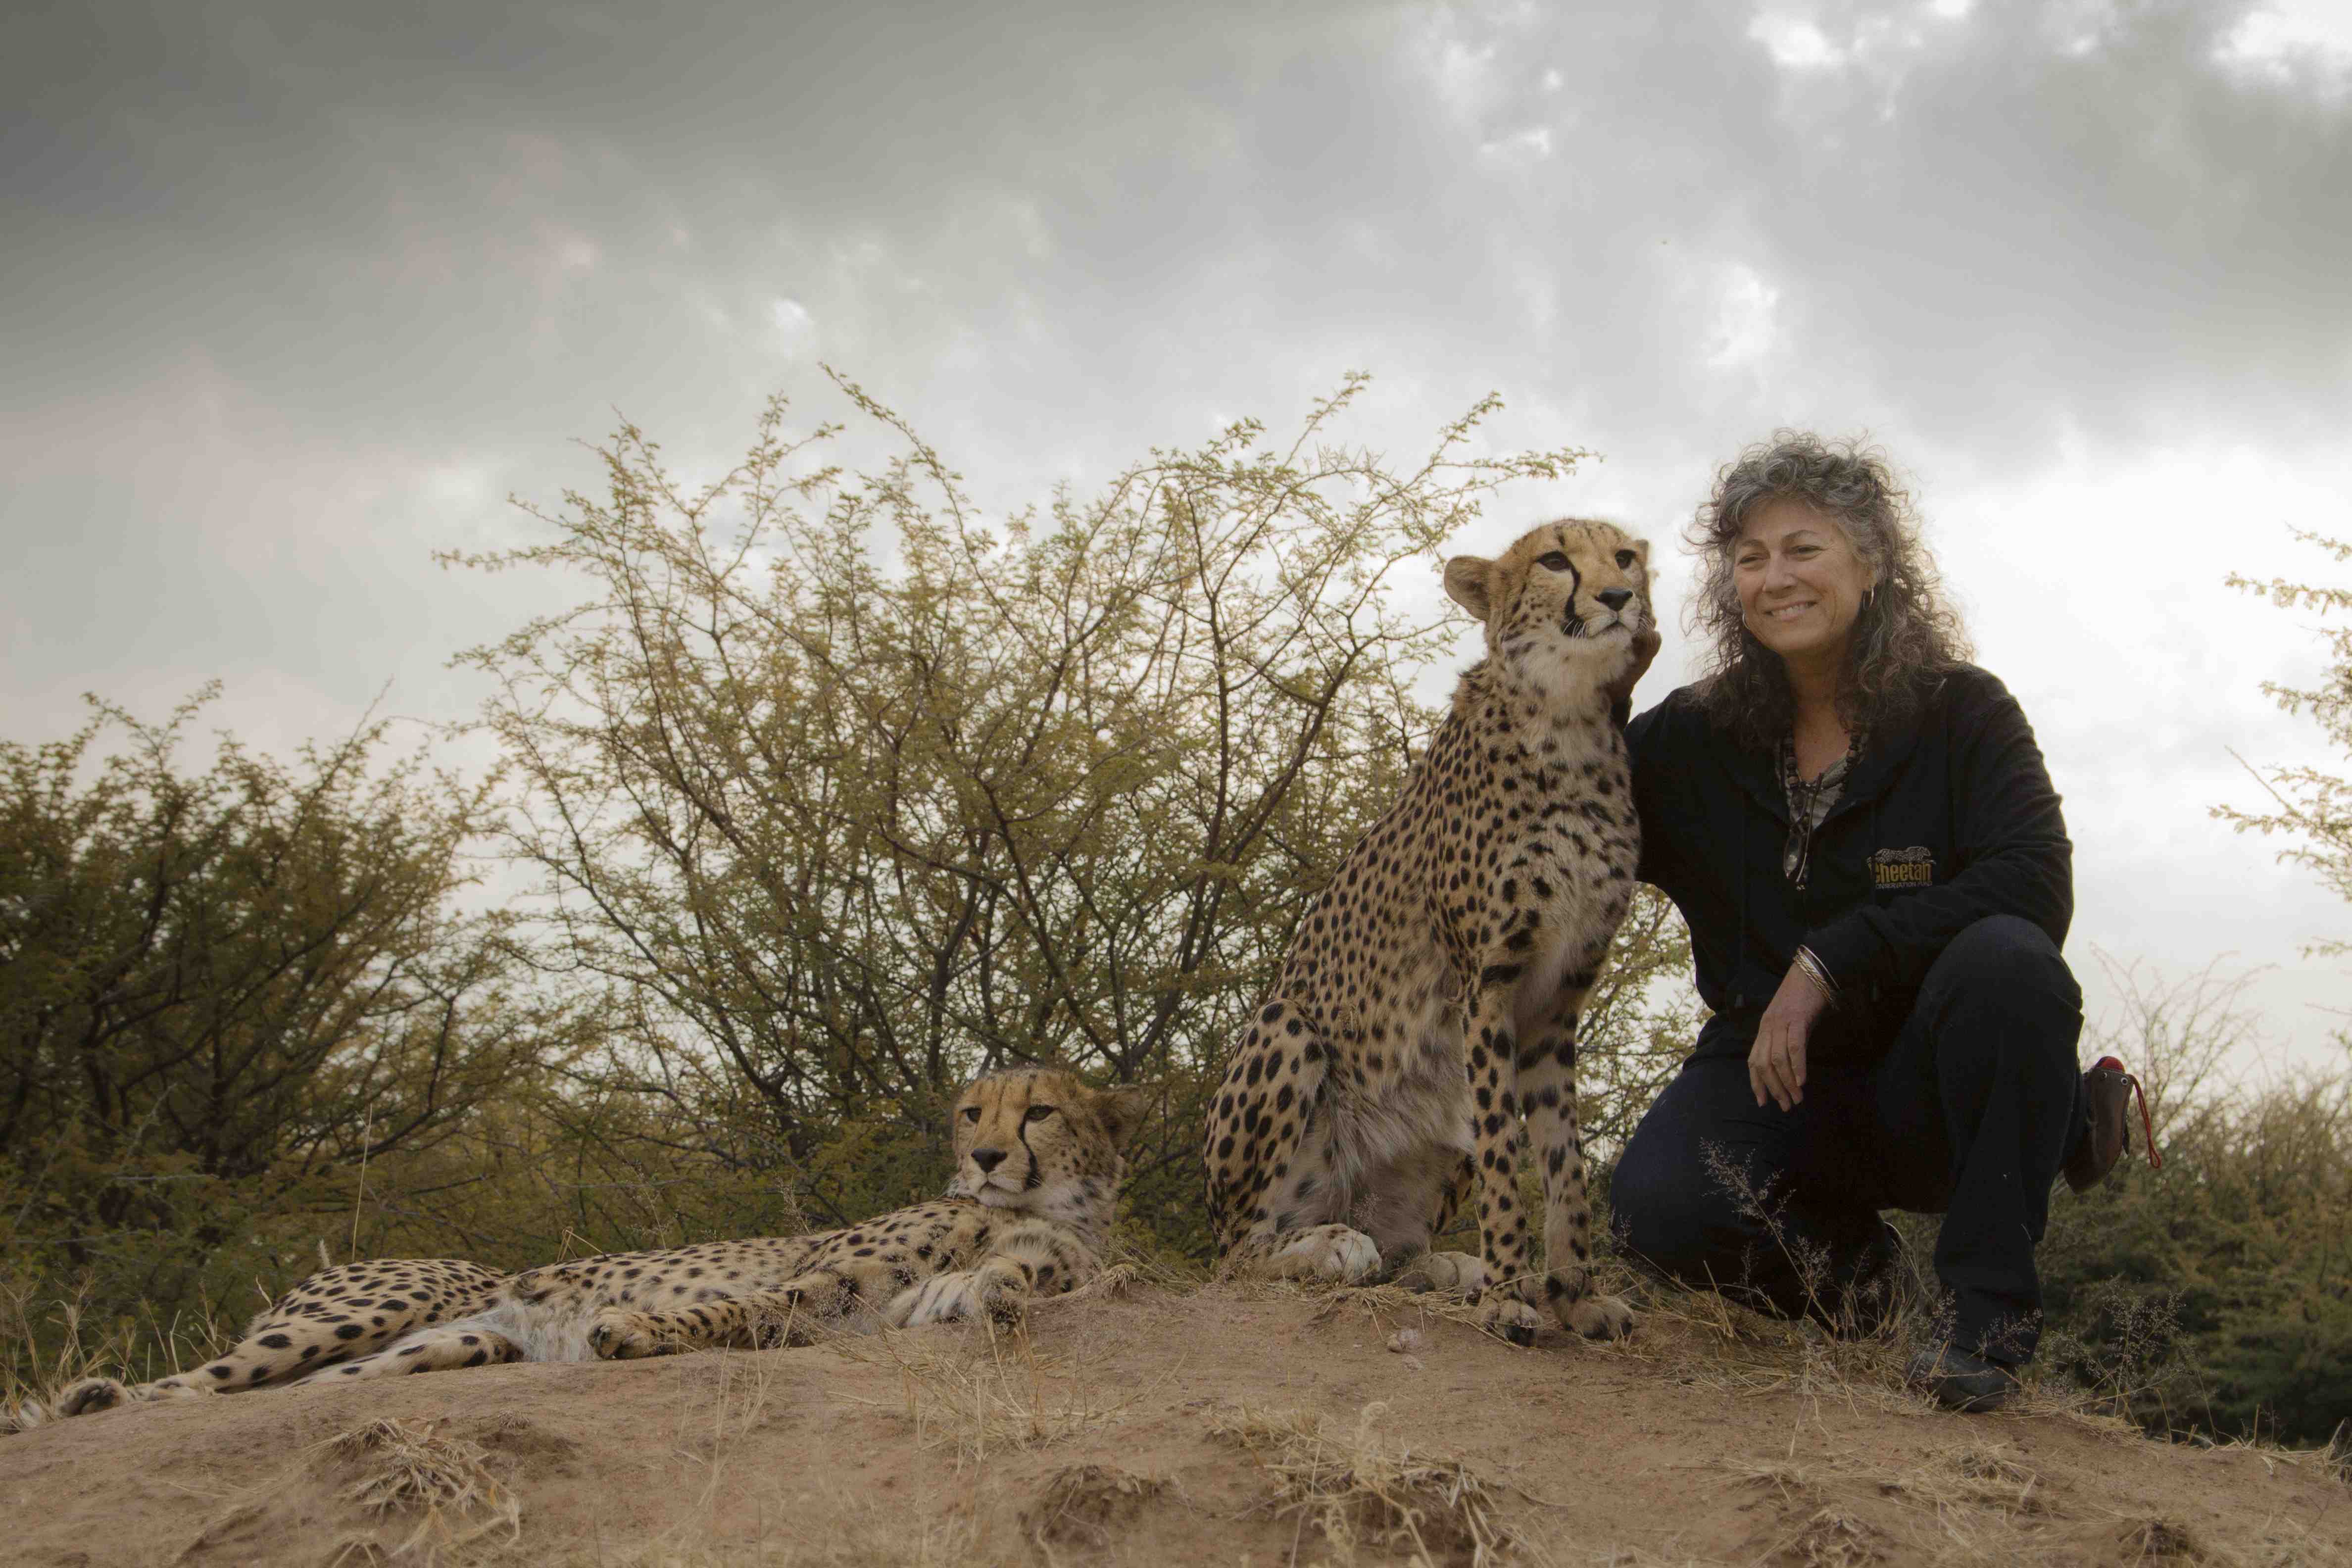 volunteer with cheetah